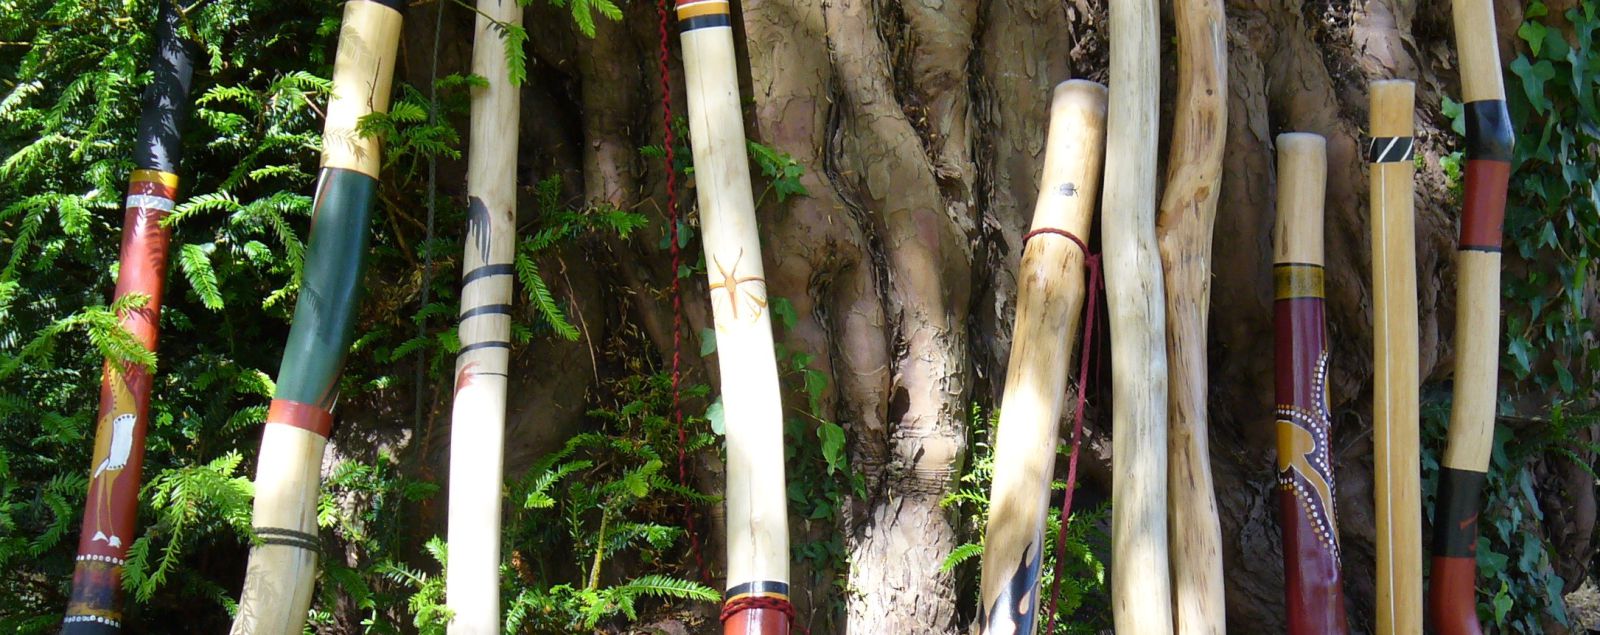 Hand Crafted Didgeridoos